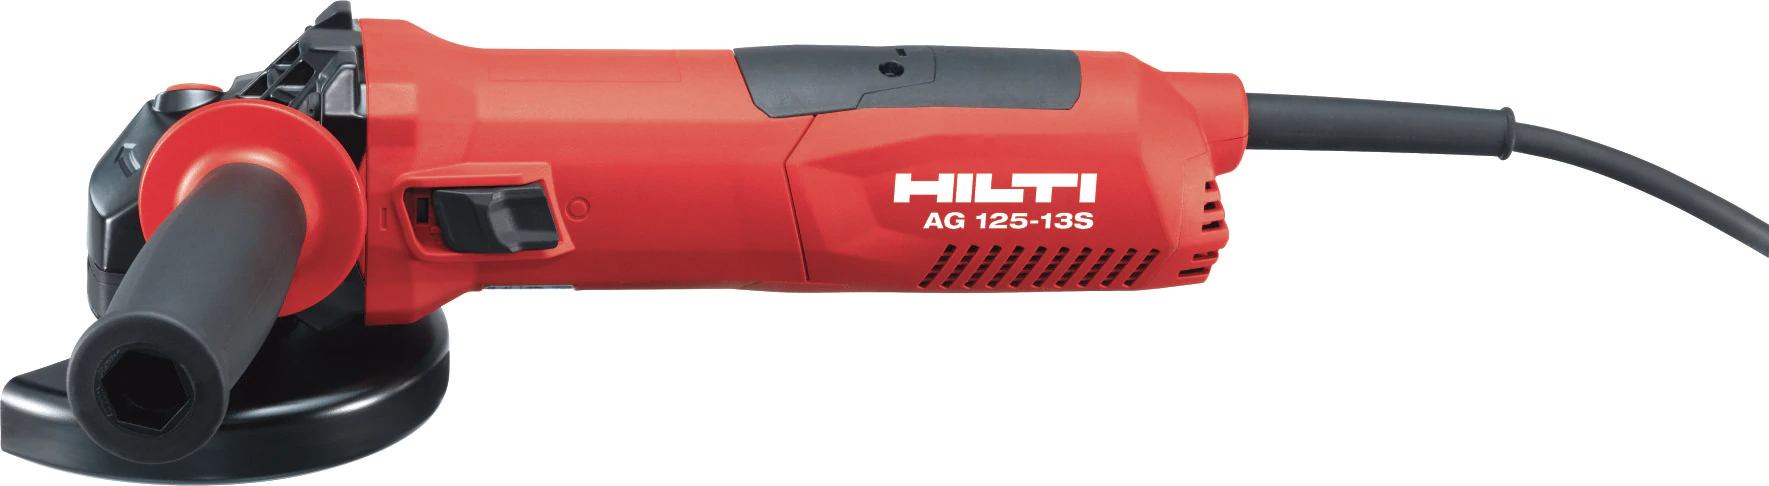 Hilti AG 125-13S Angle Grinder 110v 2.5Kg